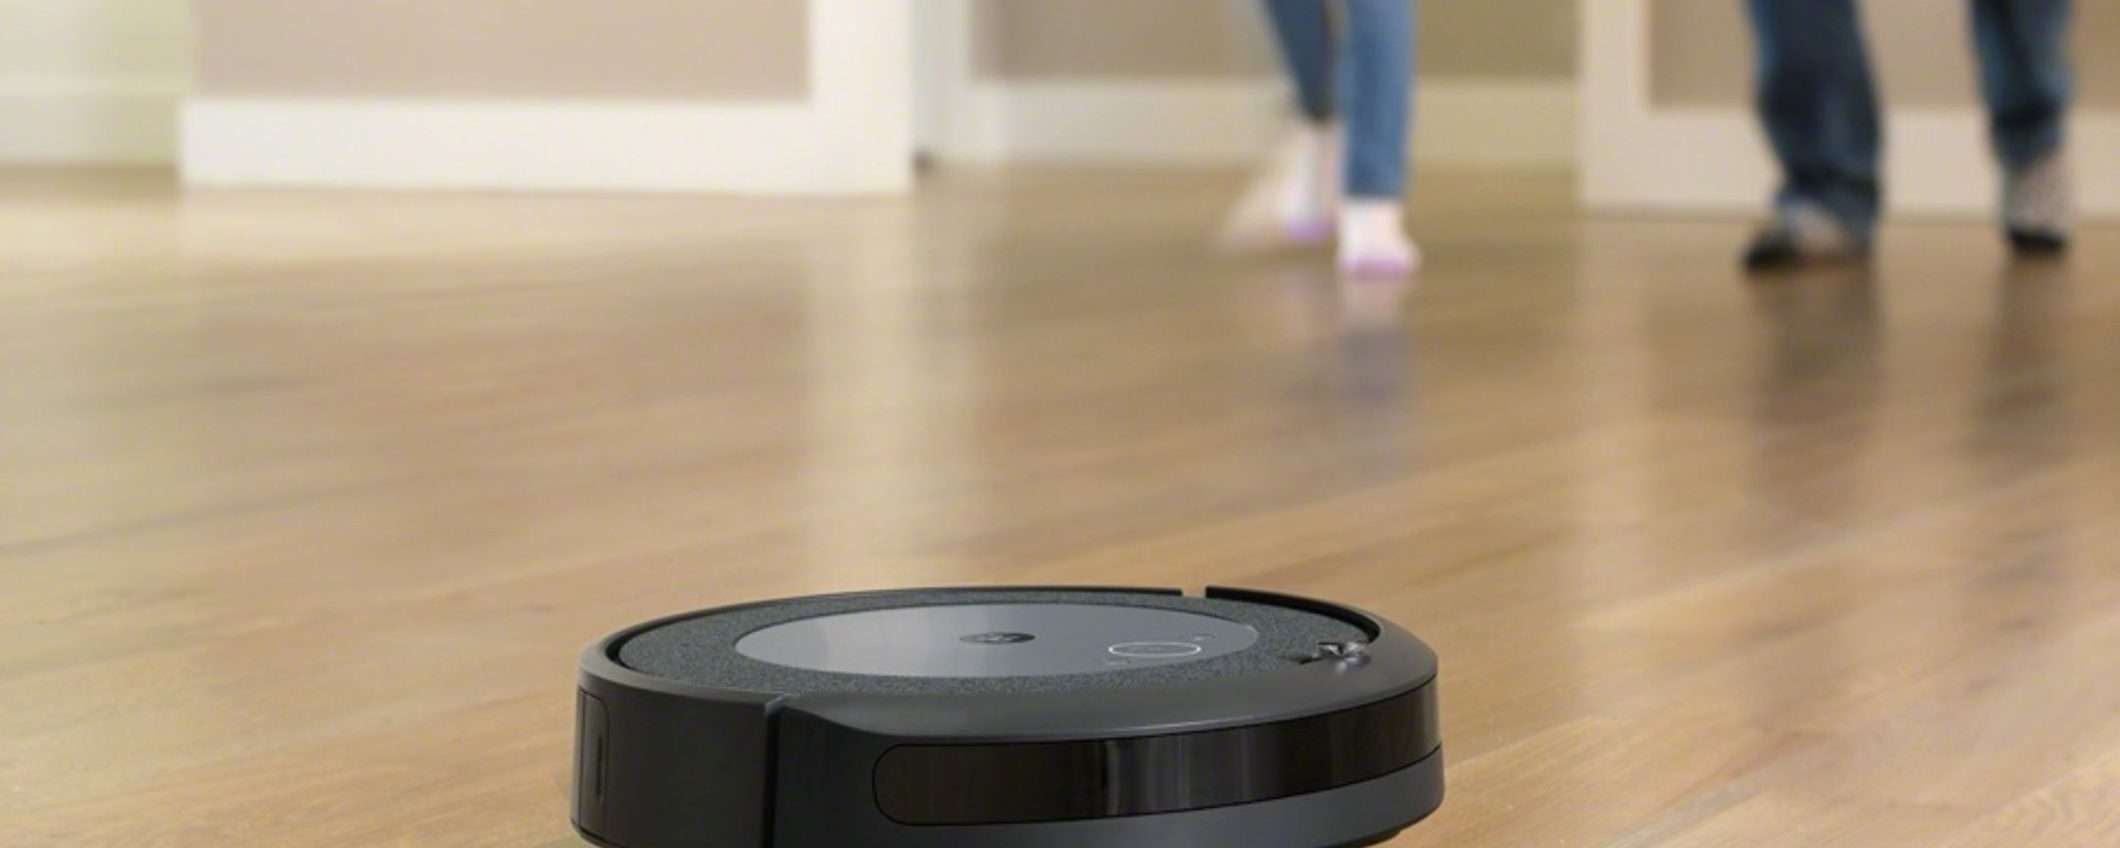 iRobot Roomba I3152 è il robot aspirapolvere DA AVERE OGGI: -35% su Amazon